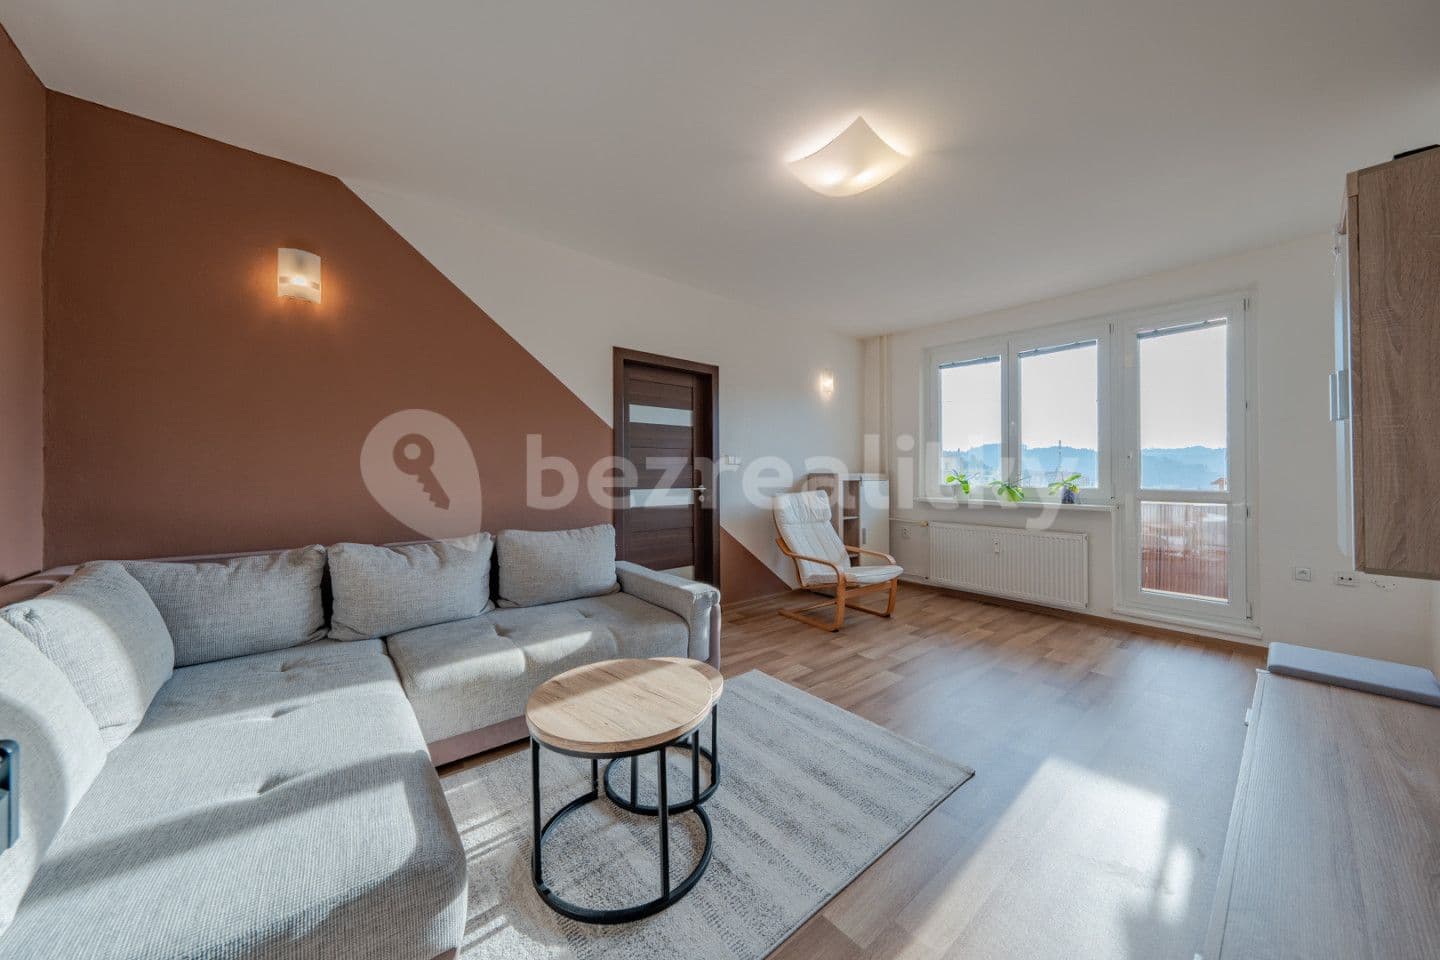 2 bedroom flat for sale, 53 m², Luh, Vsetín, Zlínský Region